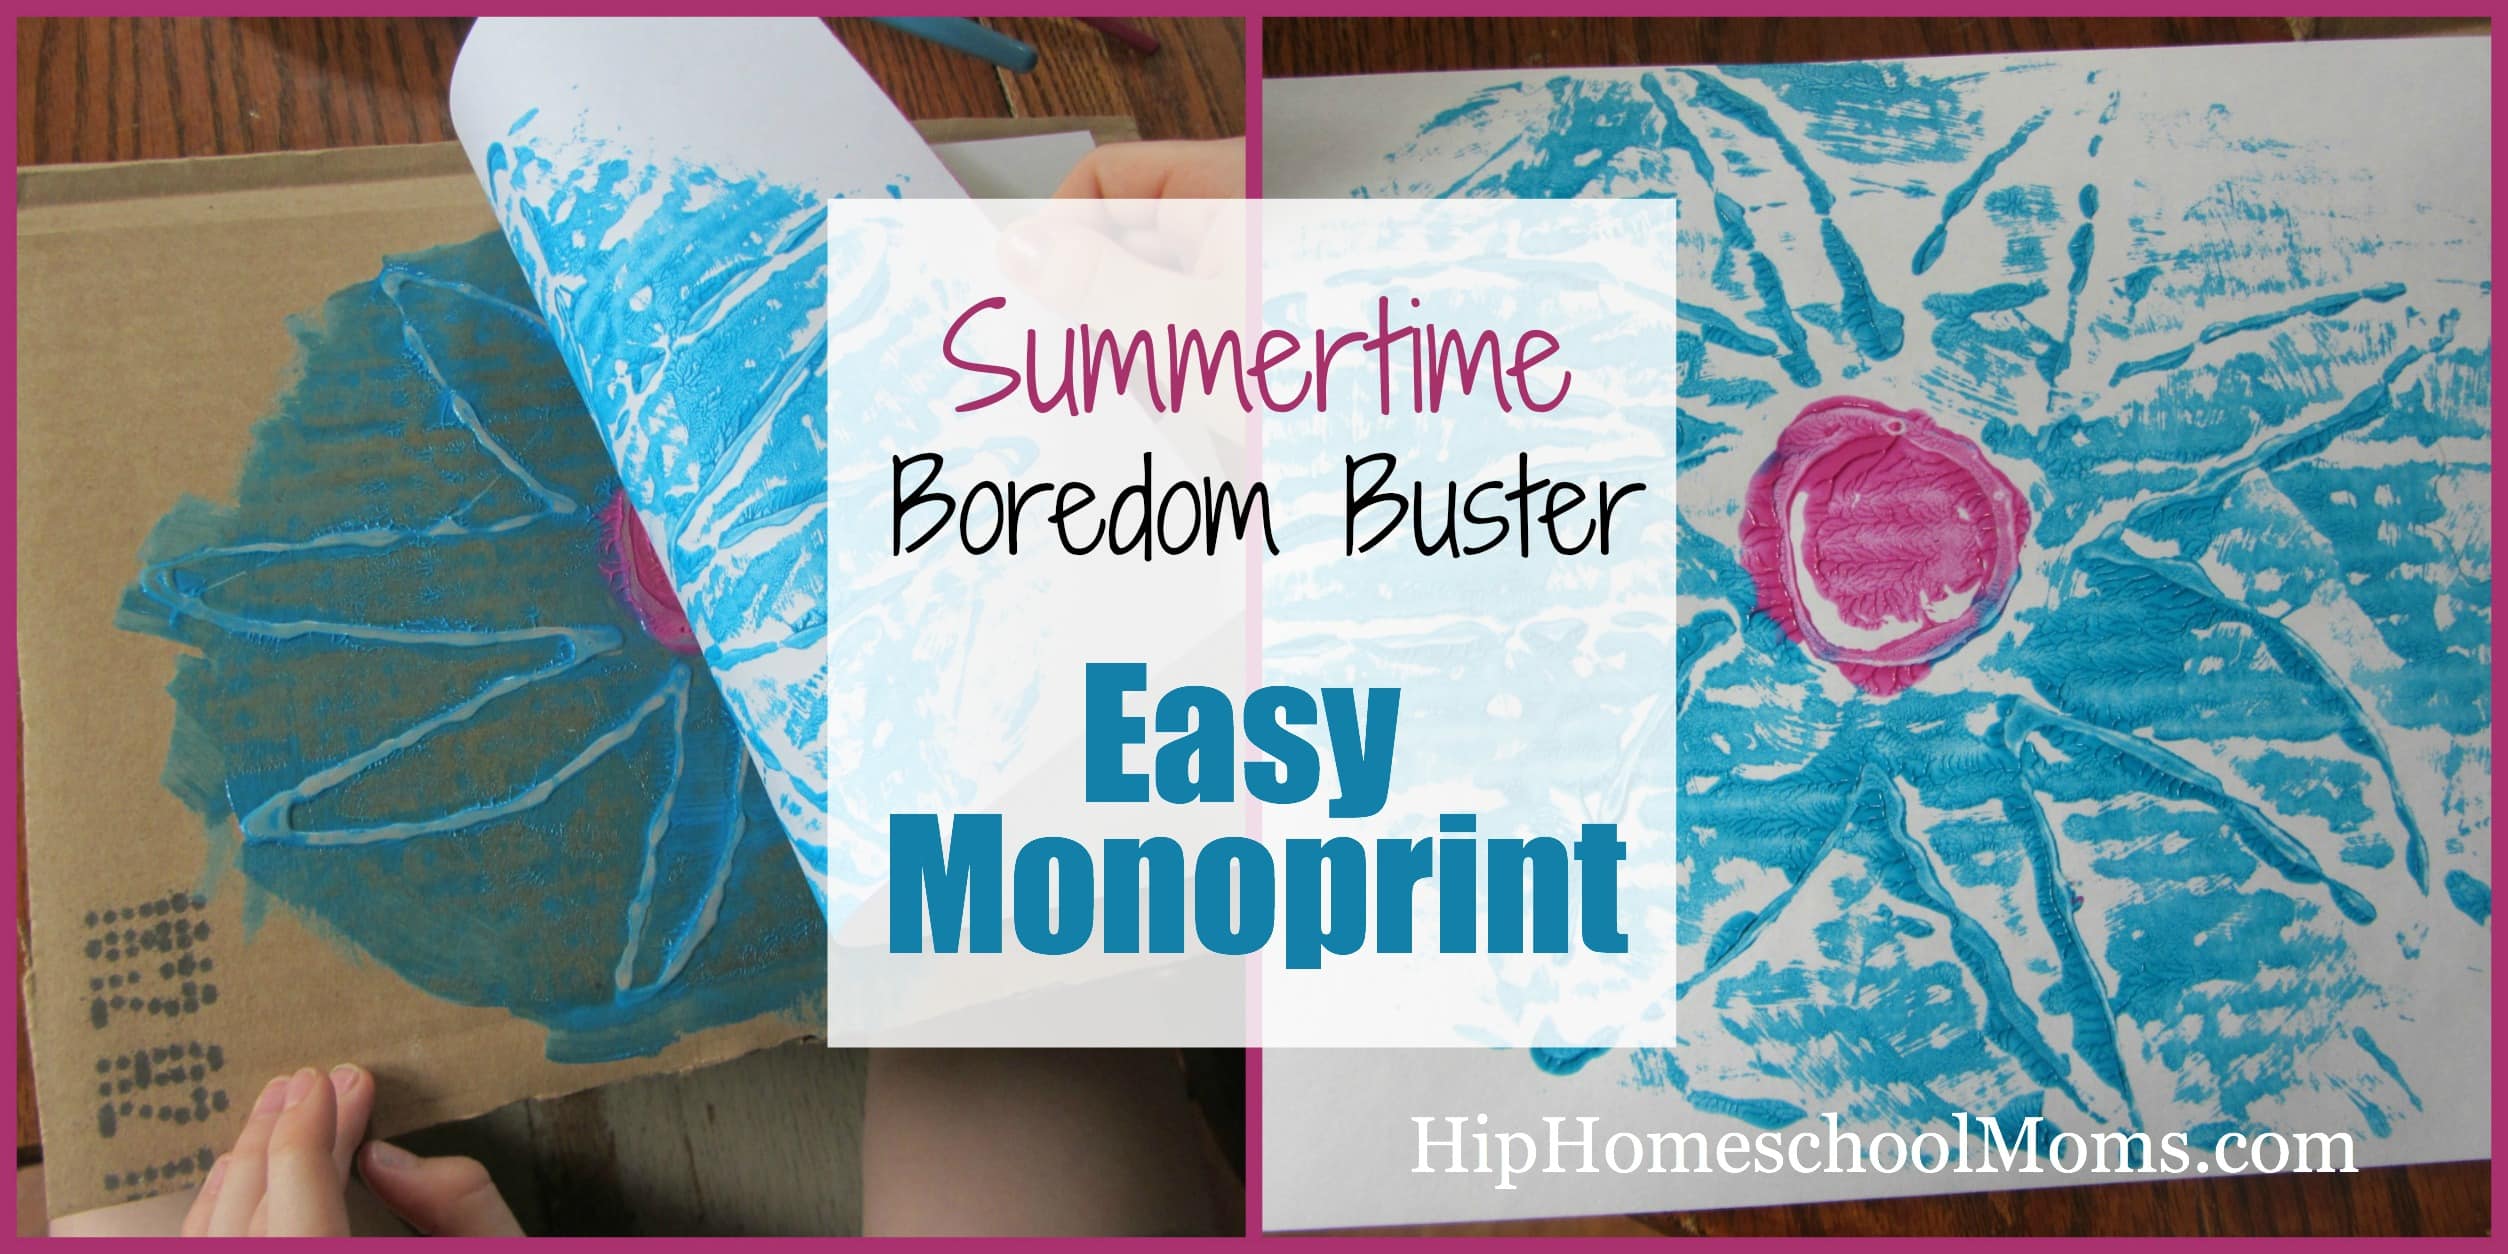 Summertime Boredom Buster: Easy Monoprint